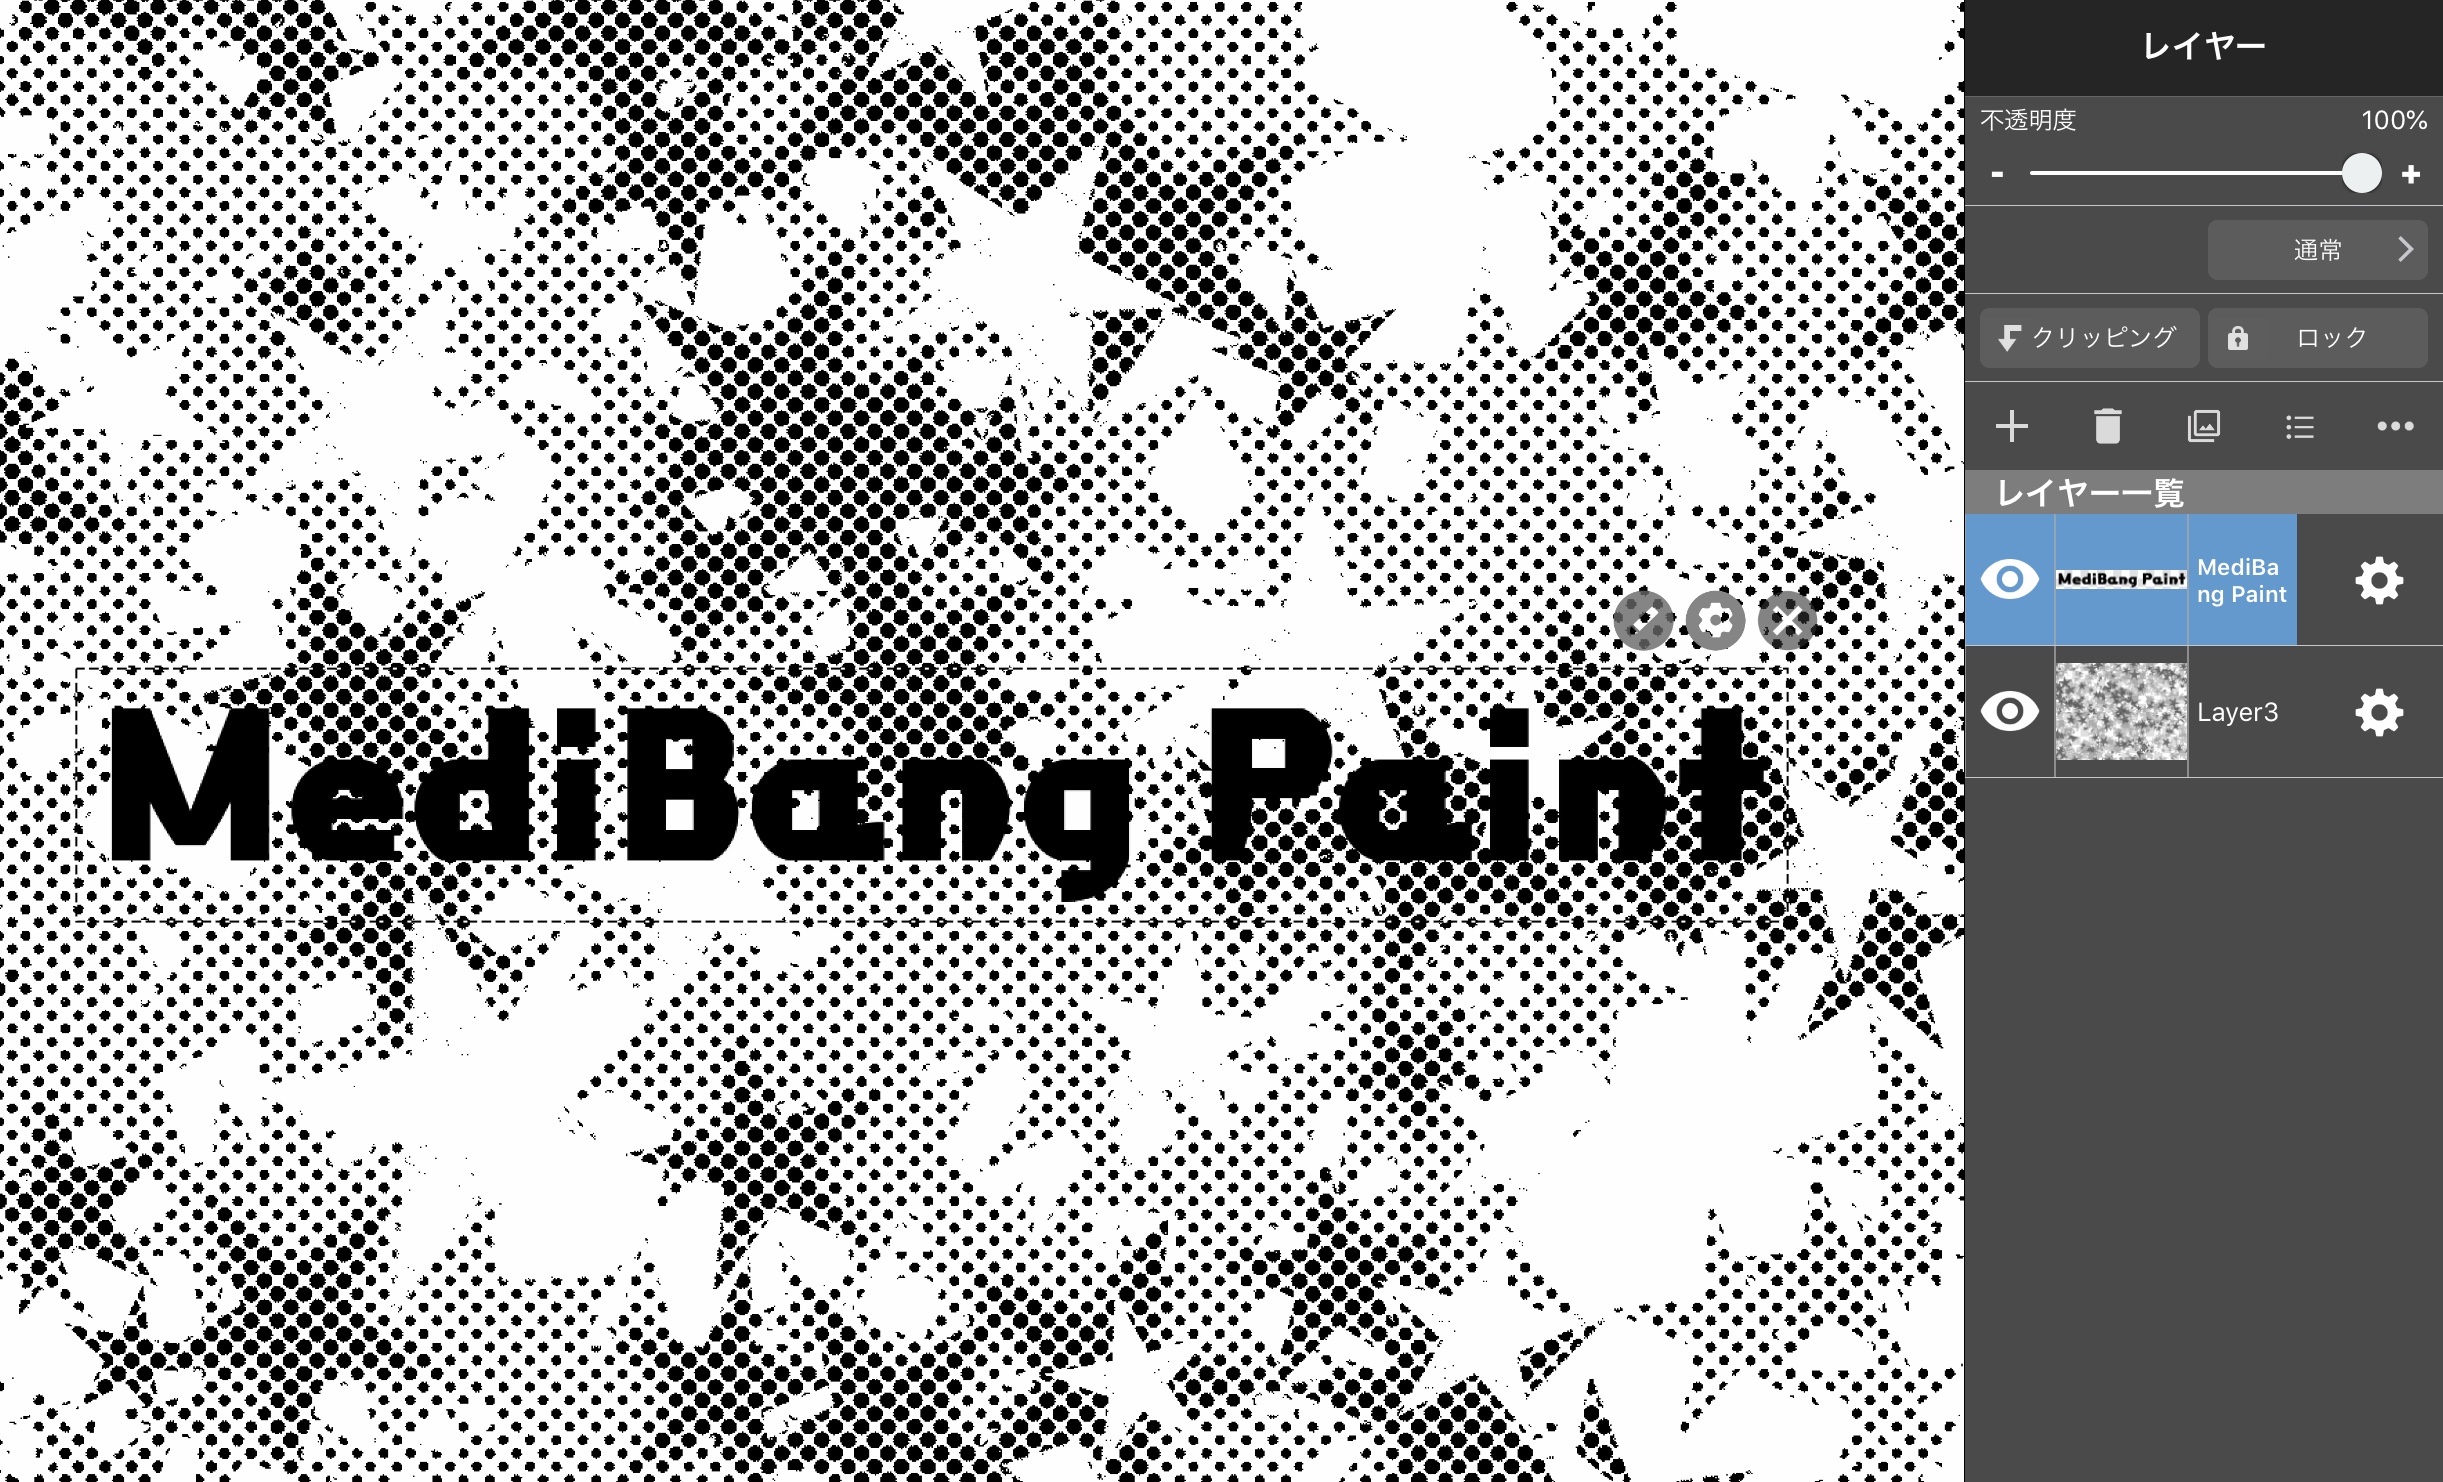 文字を縁取りして見えやすくする方法 Medibang Paint 無料のイラスト マンガ制作ツール